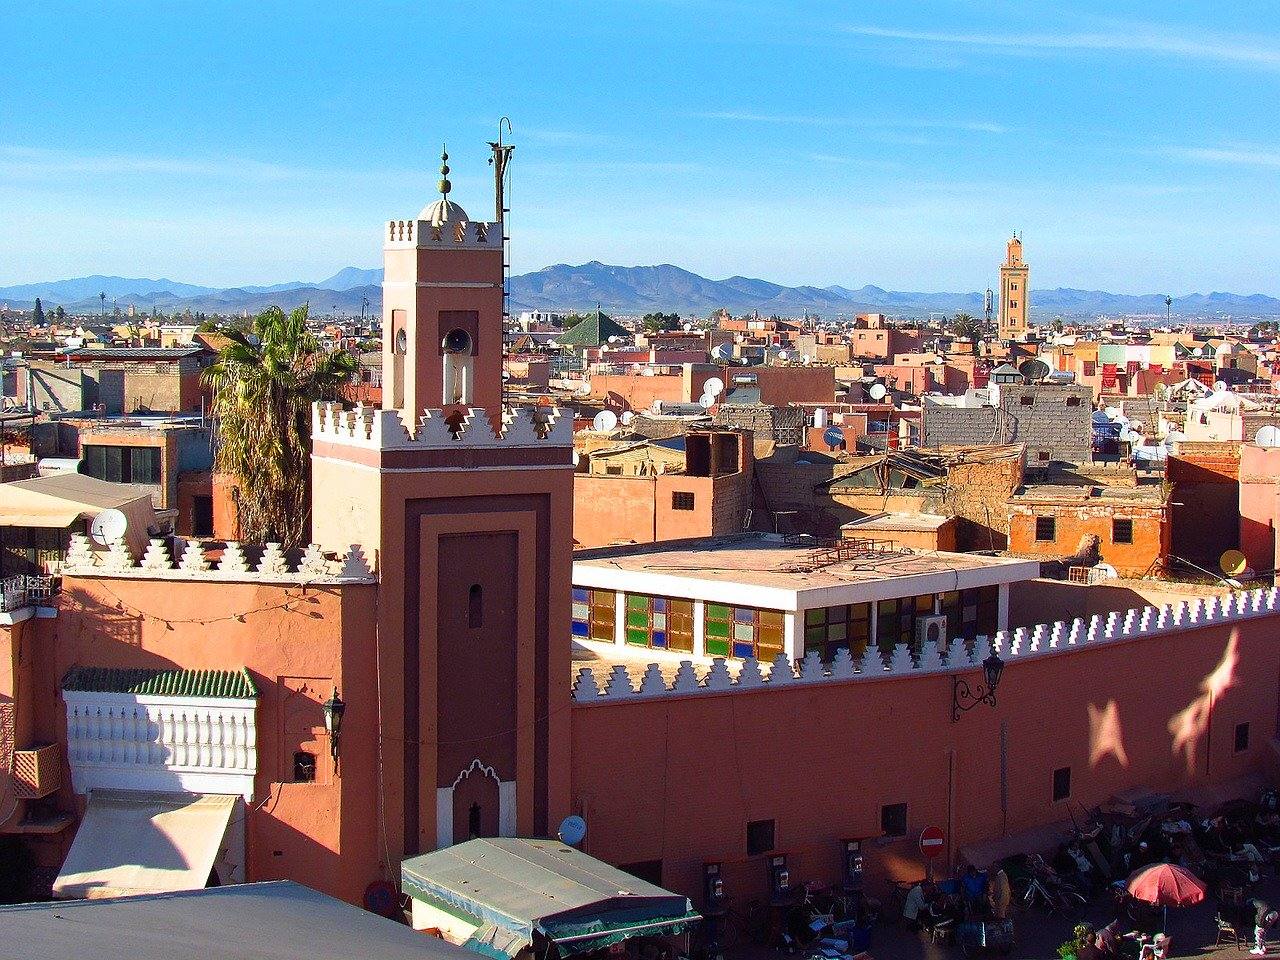 46. Marrakech